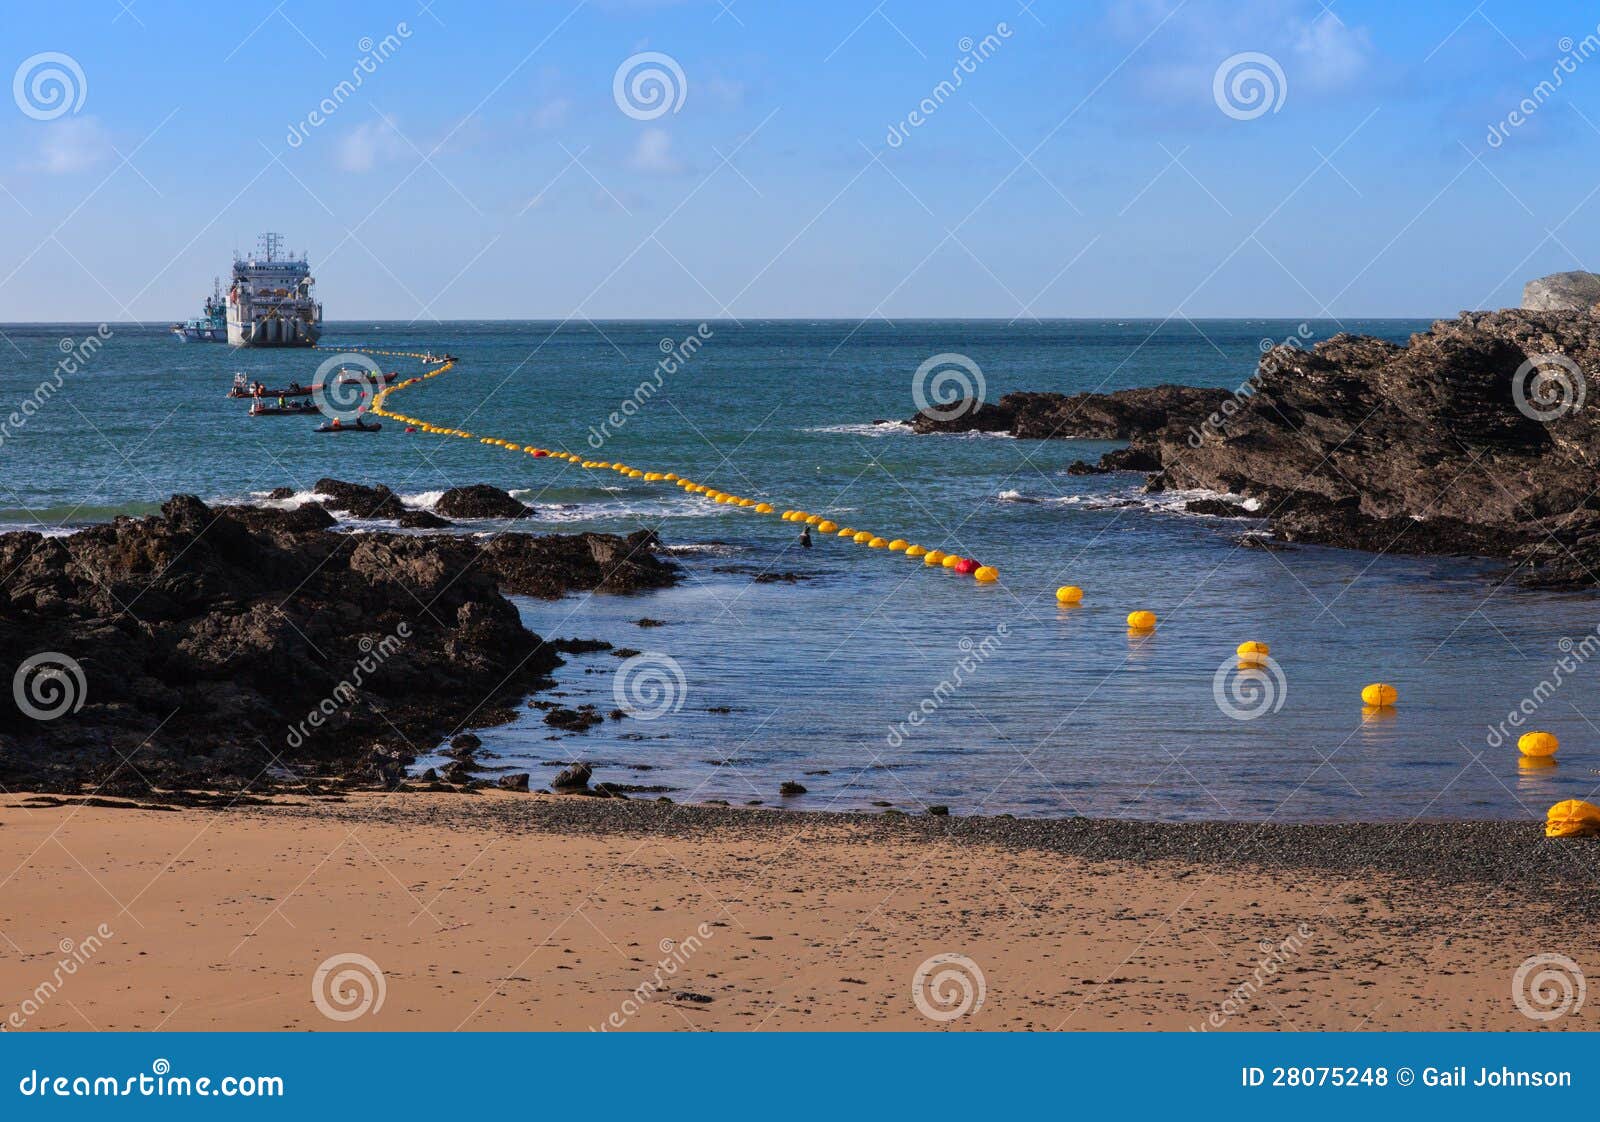 fibre optic cable coming ashore